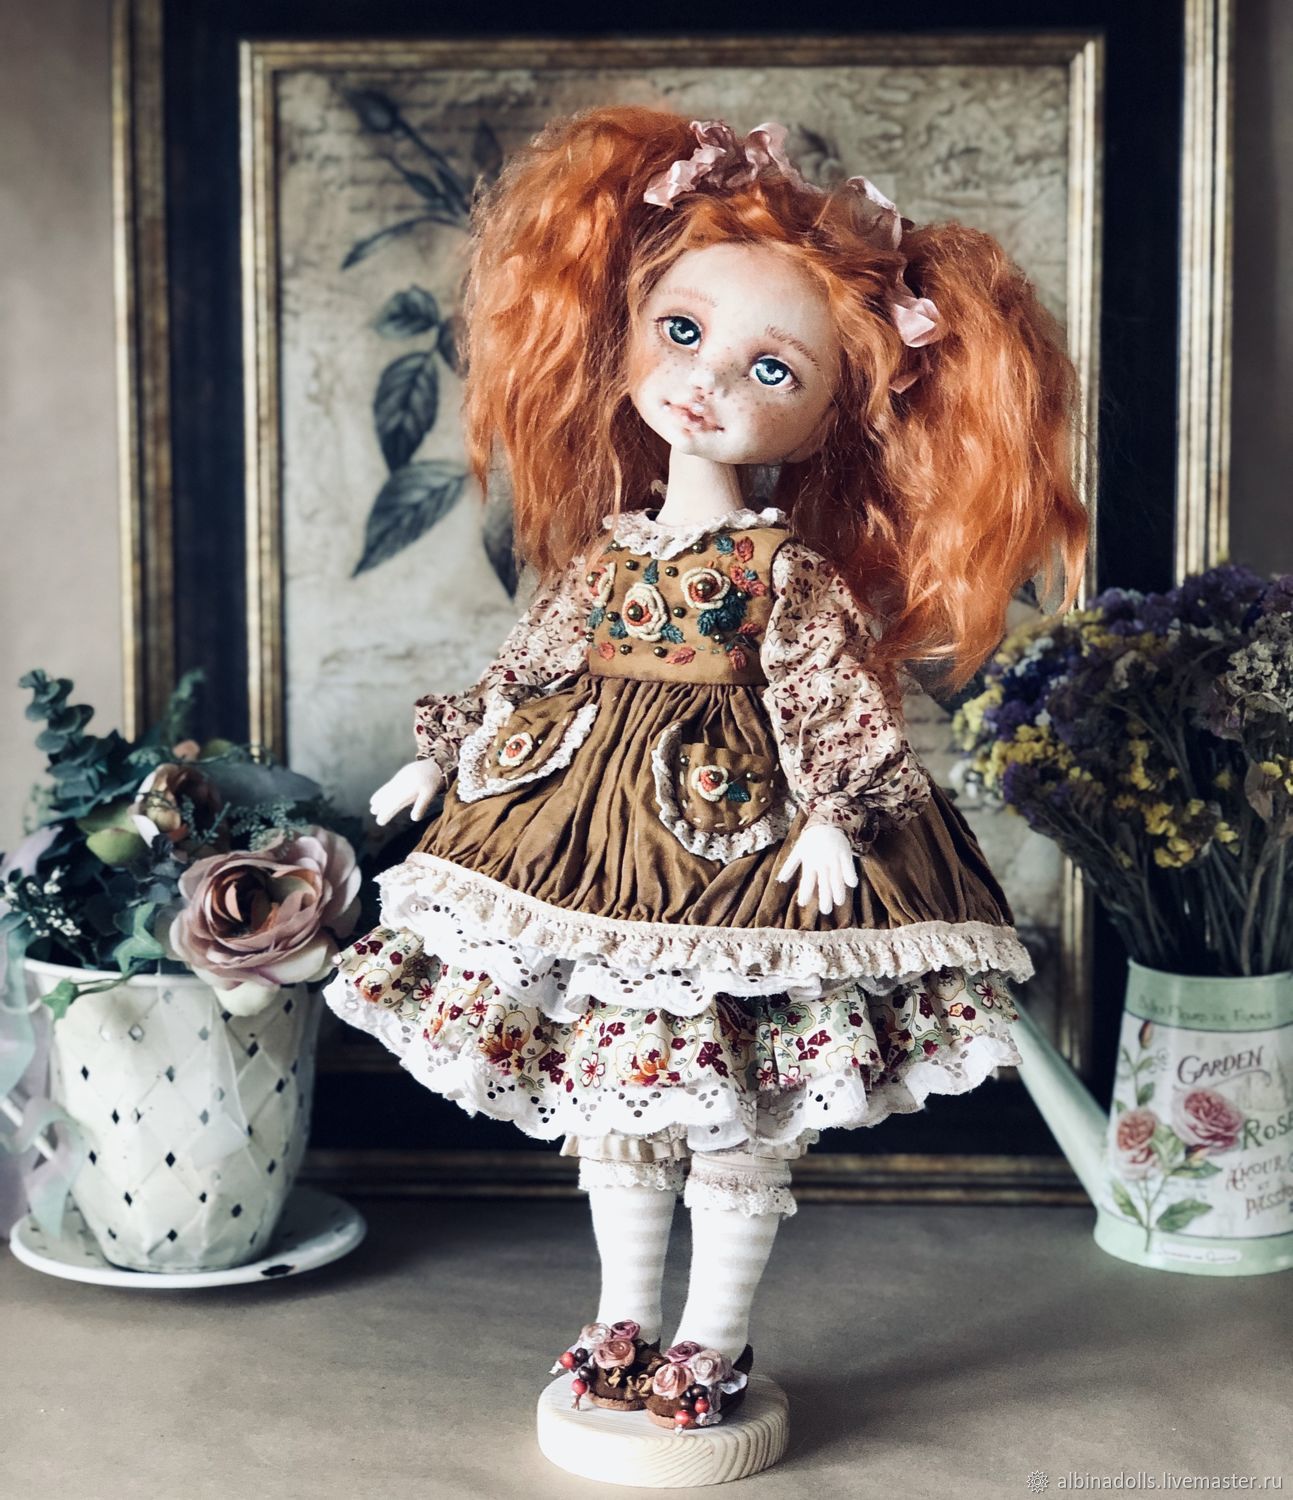 Авторская кукла мастера. Авторская кукла. Дизайнерские куклы. Авторская кукла необычная. Авторские текстильные куклы.